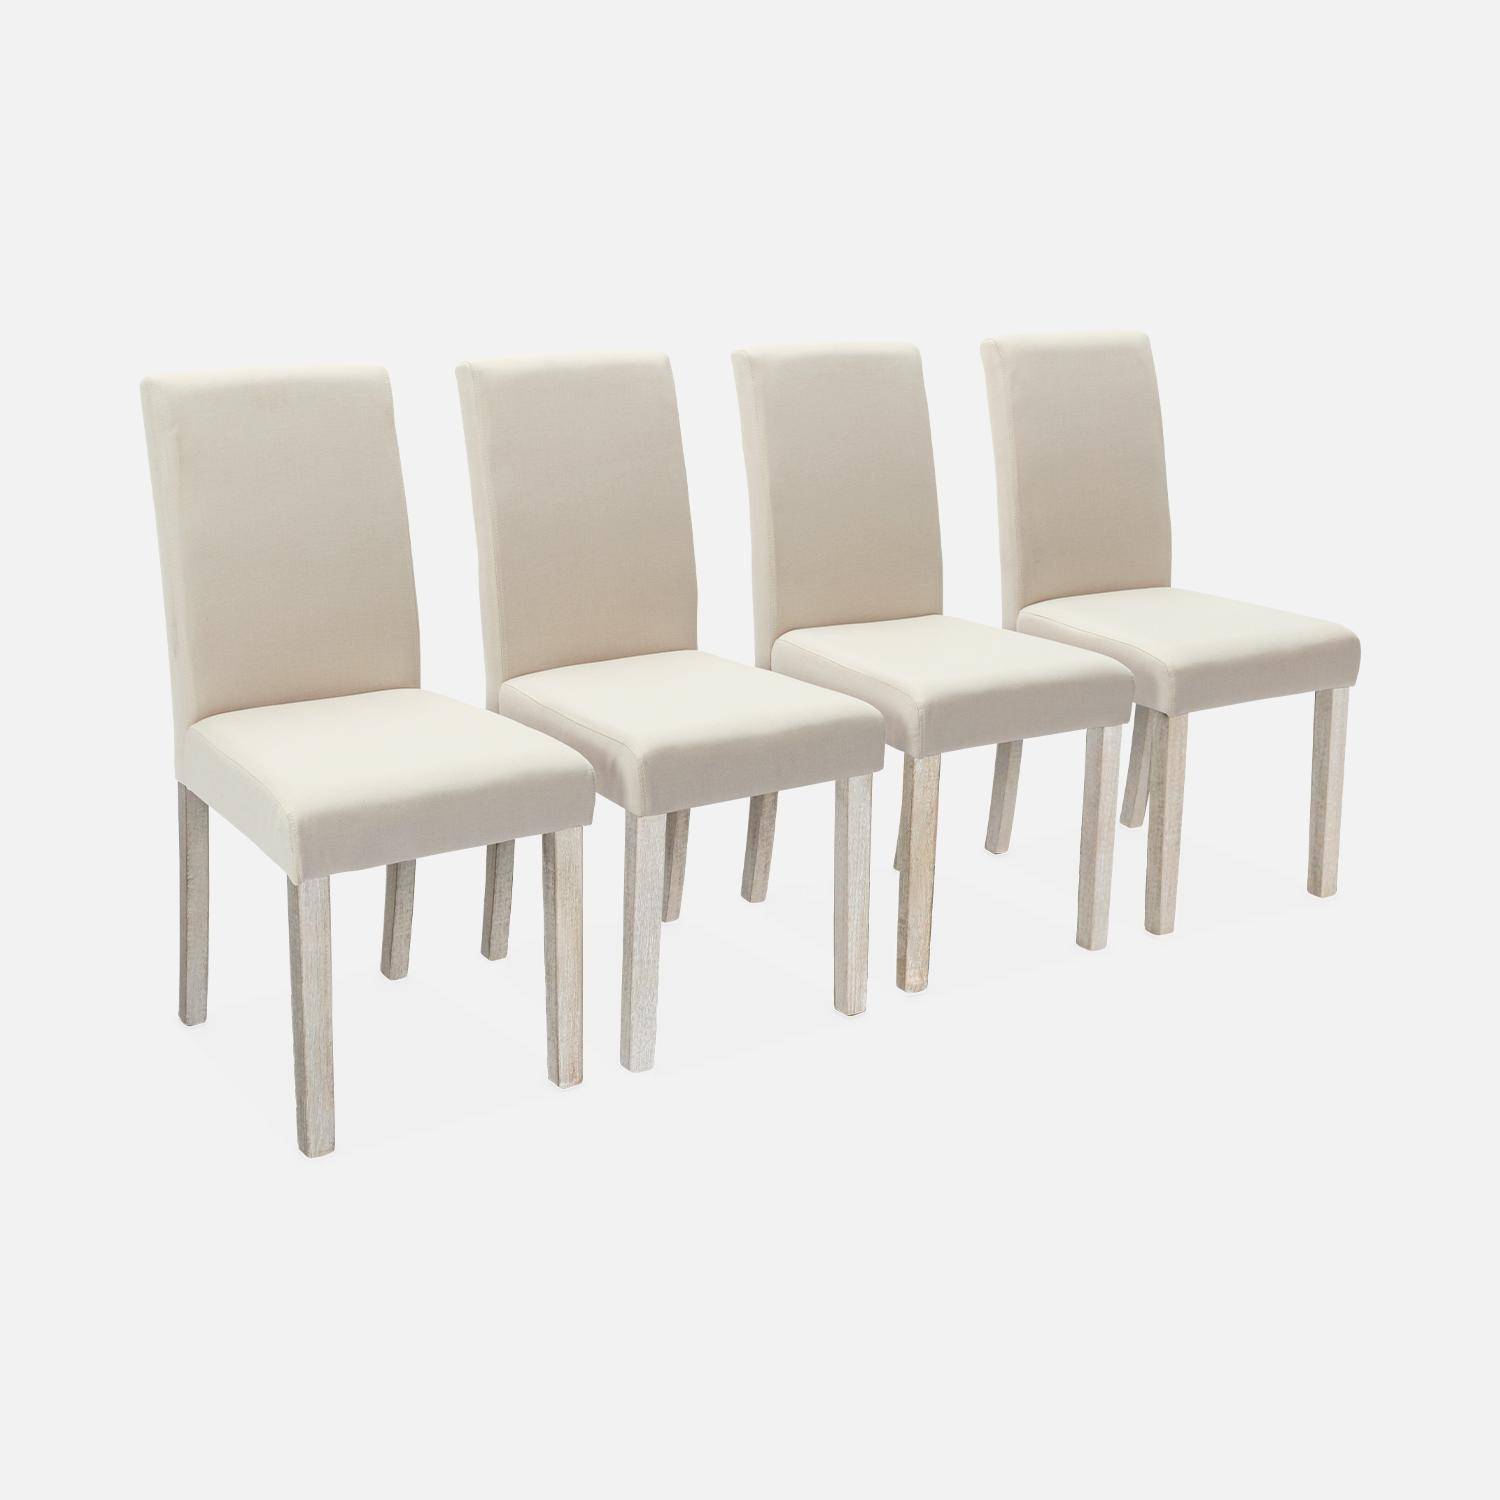 4er Set Stühle mit Stoffbezug Beige, Holzbeine mit Ceruse Finish Photo2